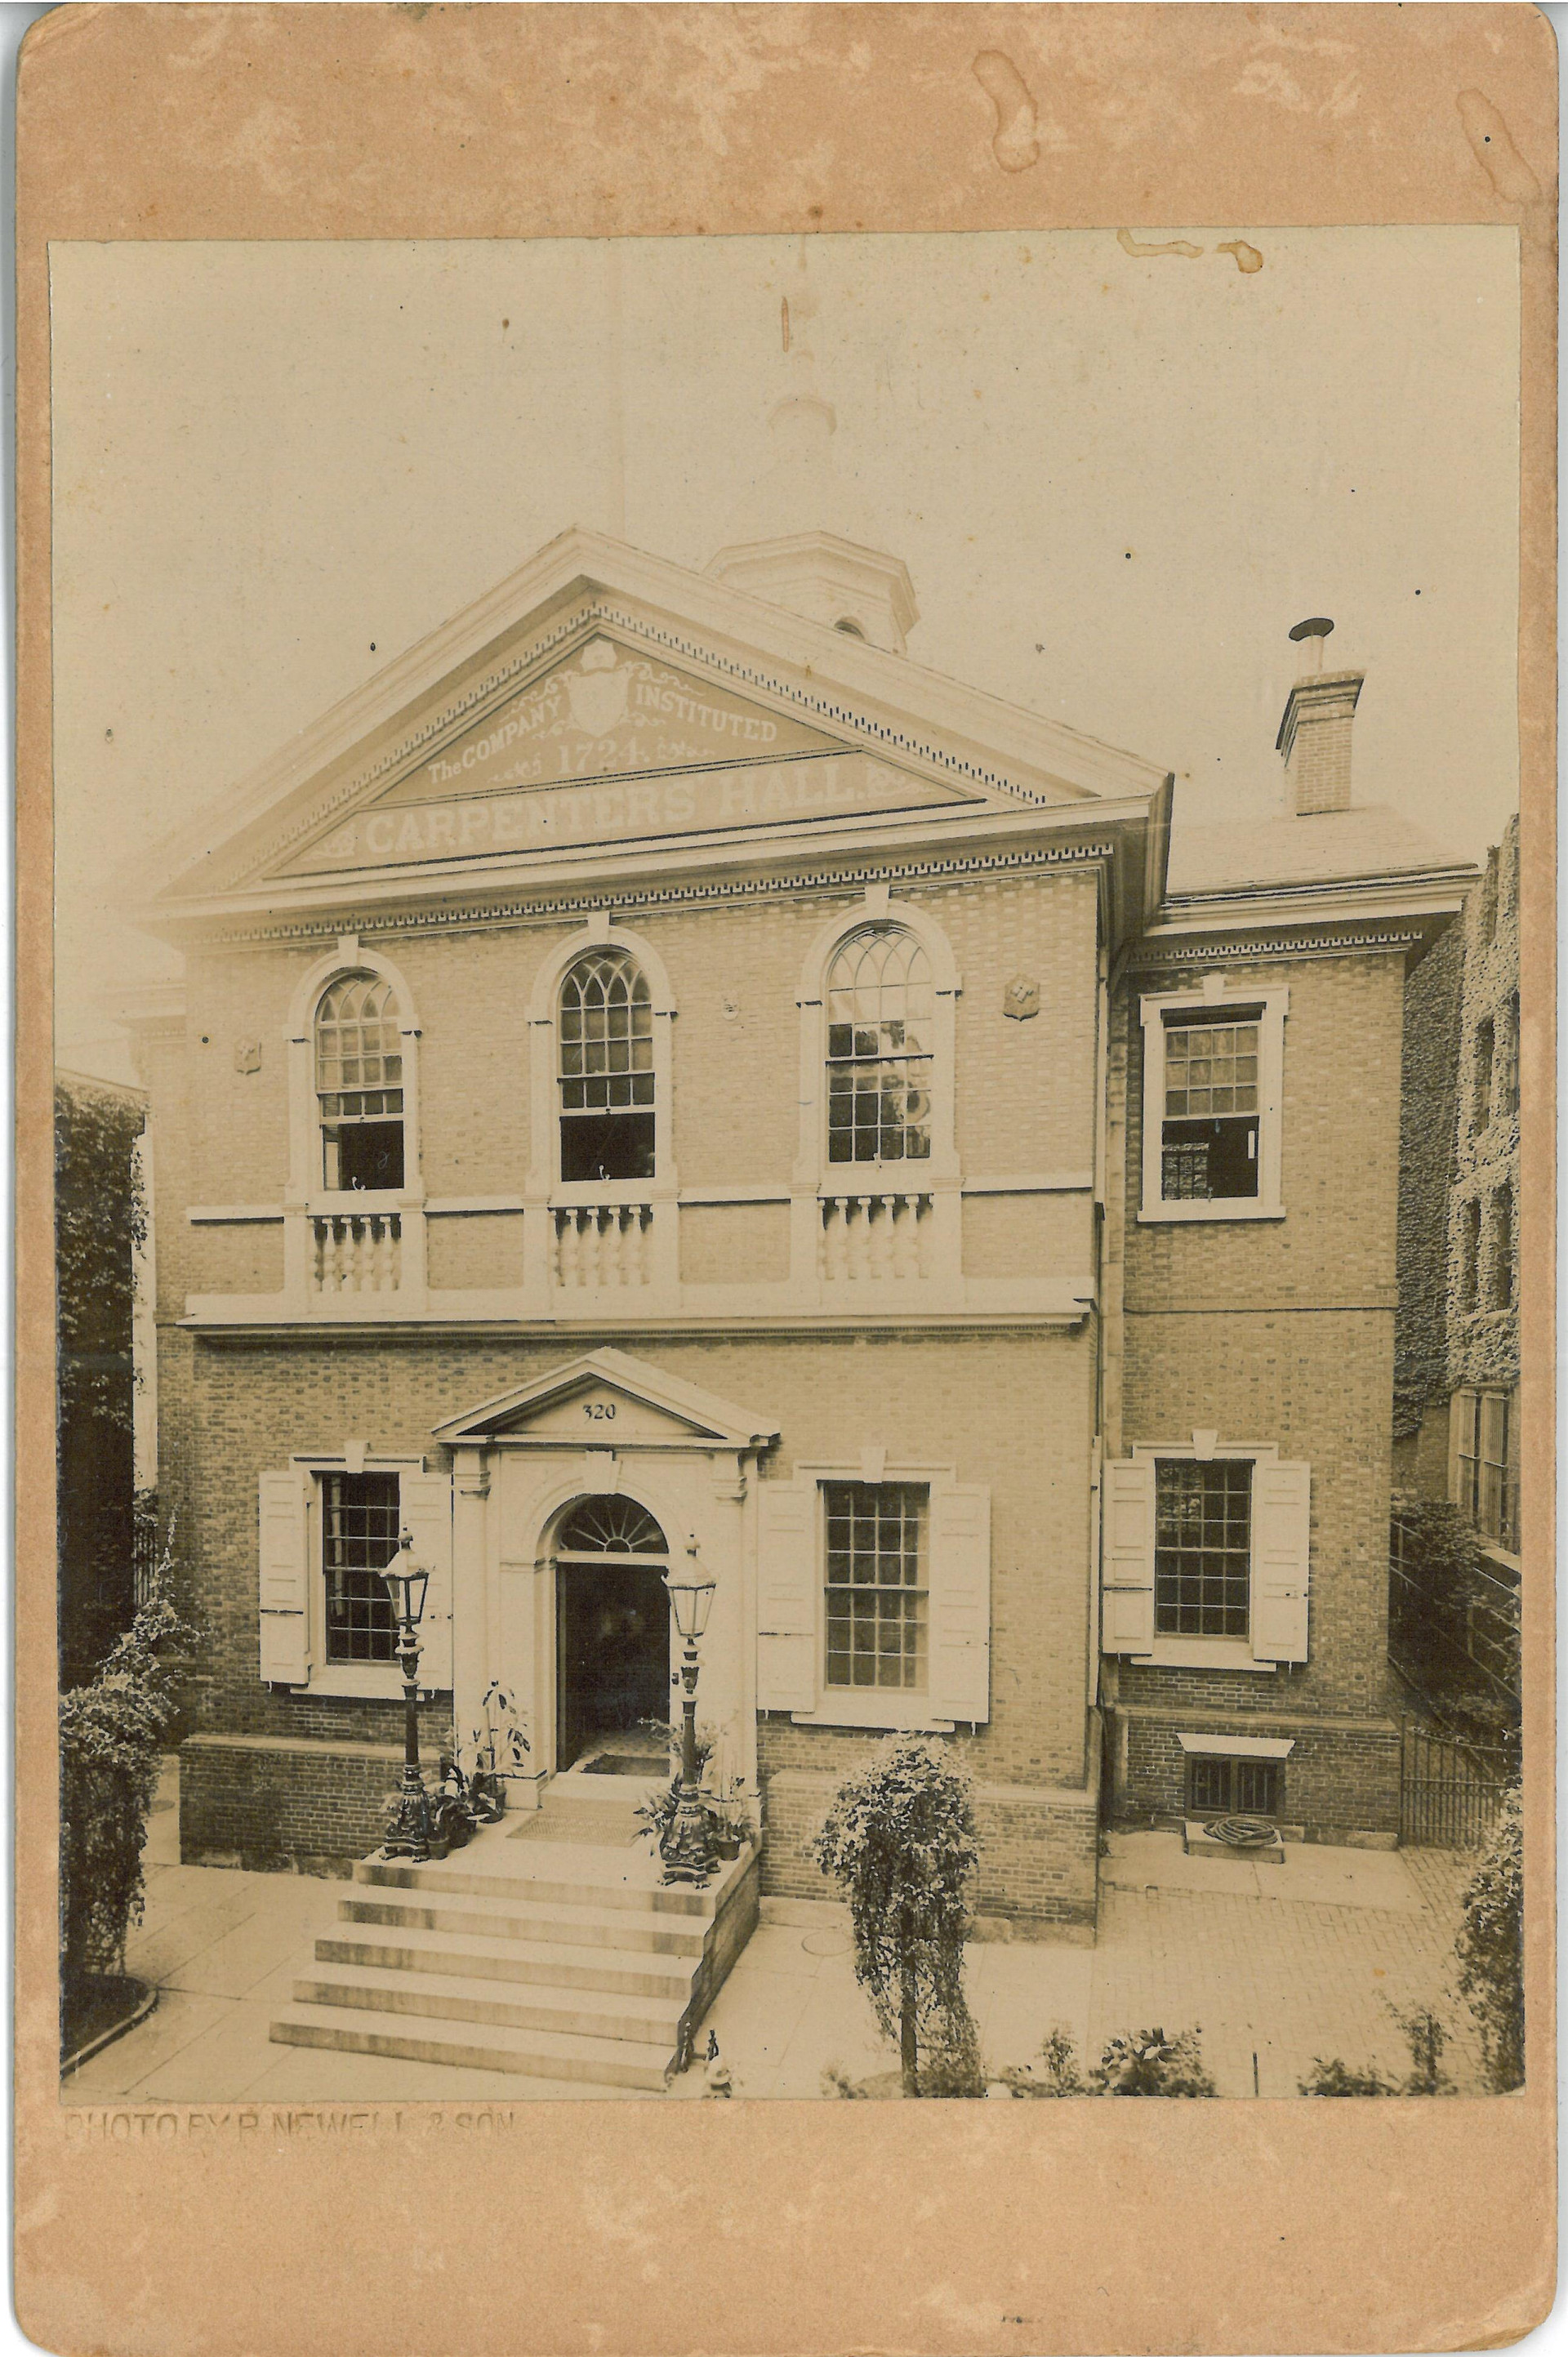 Tòa nhà Carpenters 'Hall những năm tháng của thế kỳ 18. Ảnh: LOC.